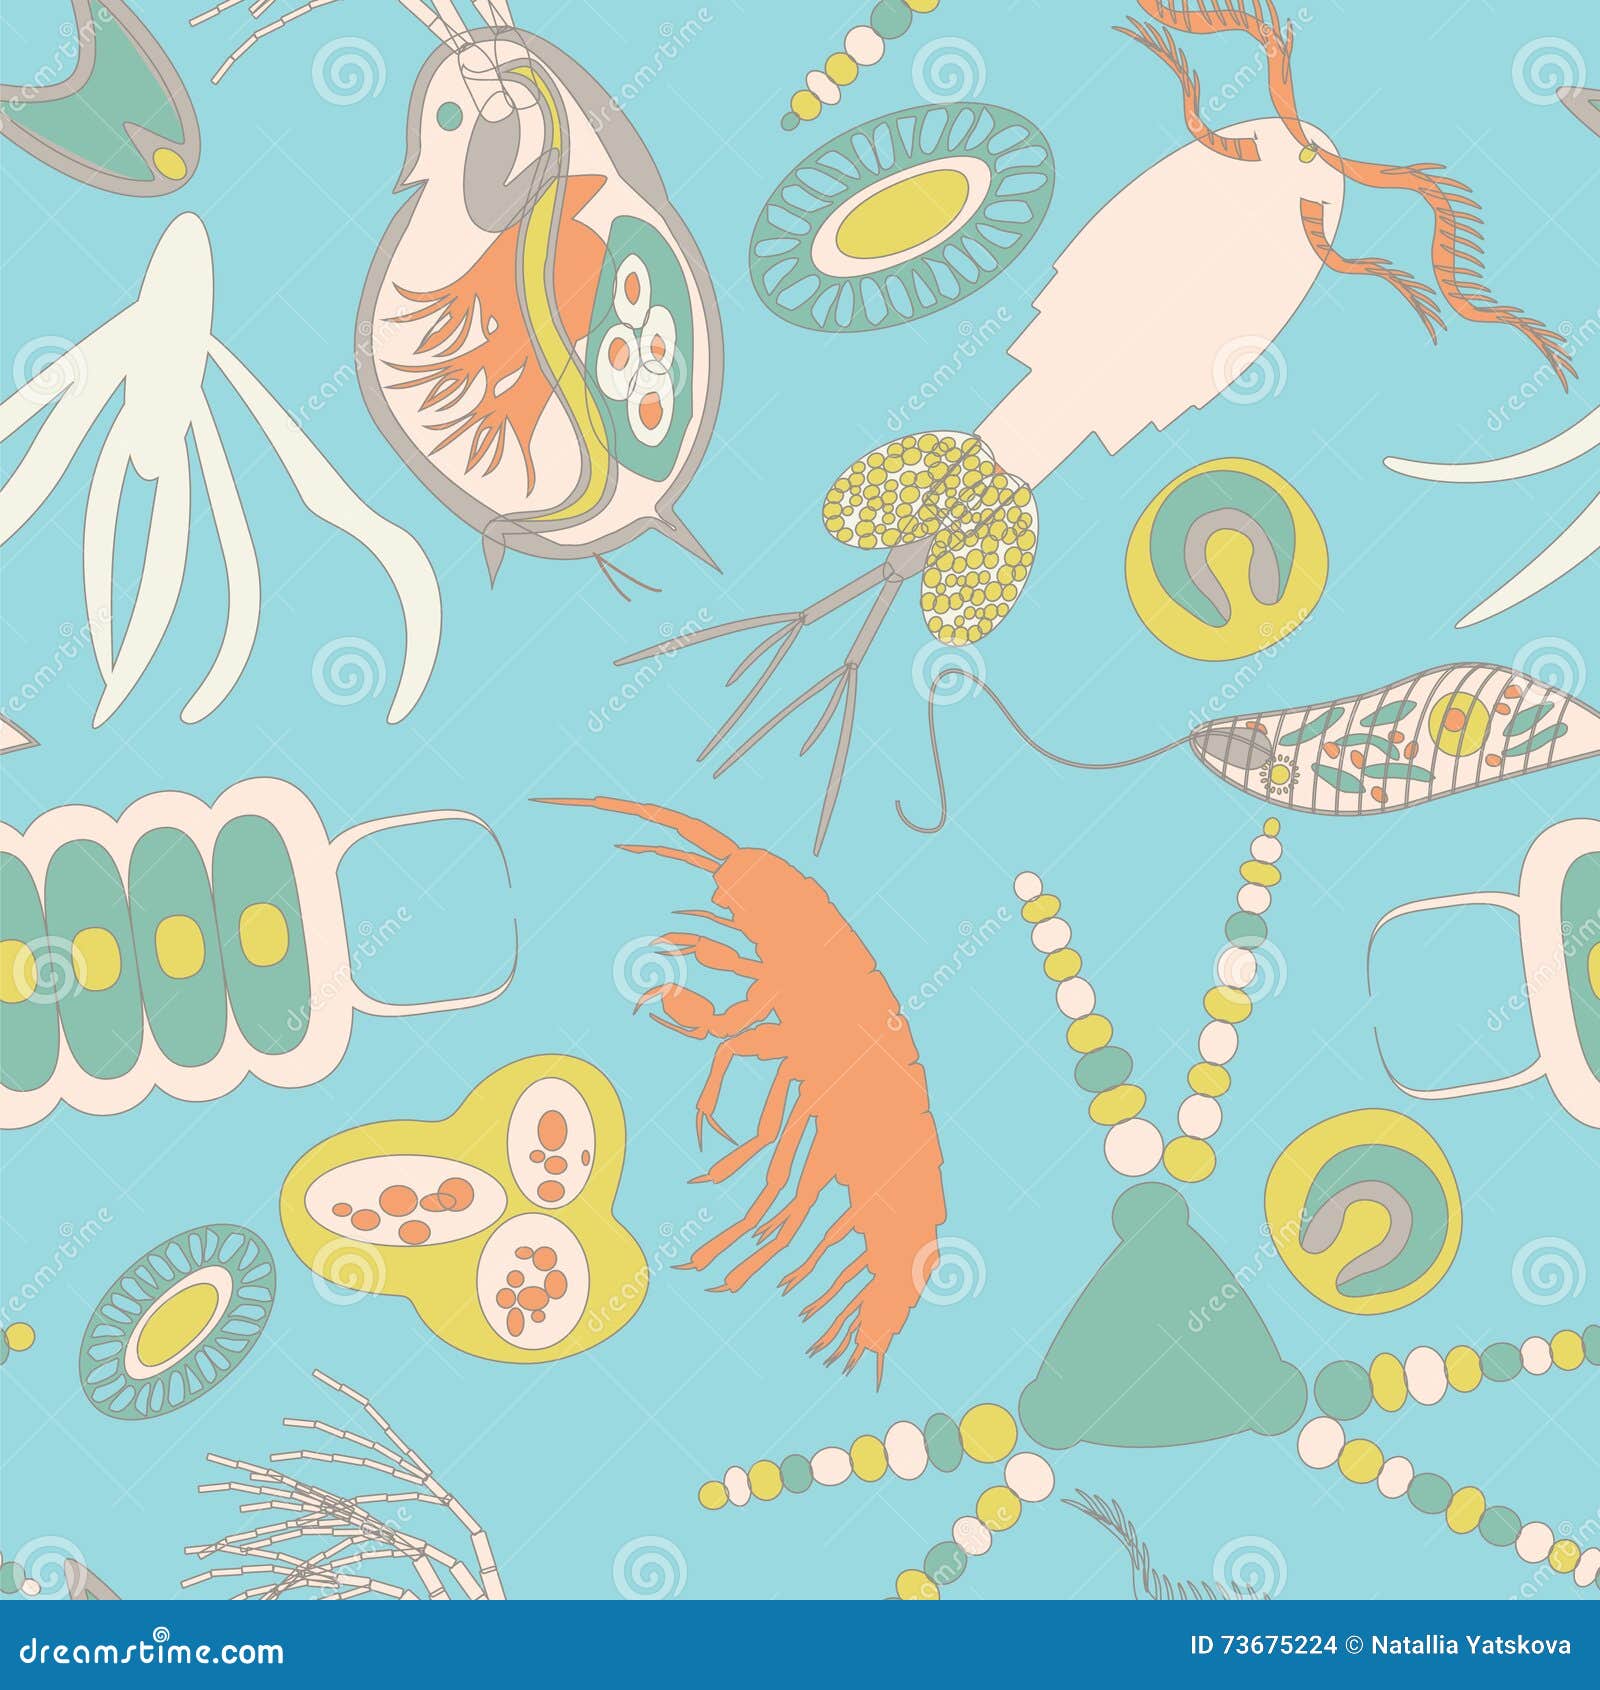 Plankton Wallpaper by TheBigDaveC on DeviantArt